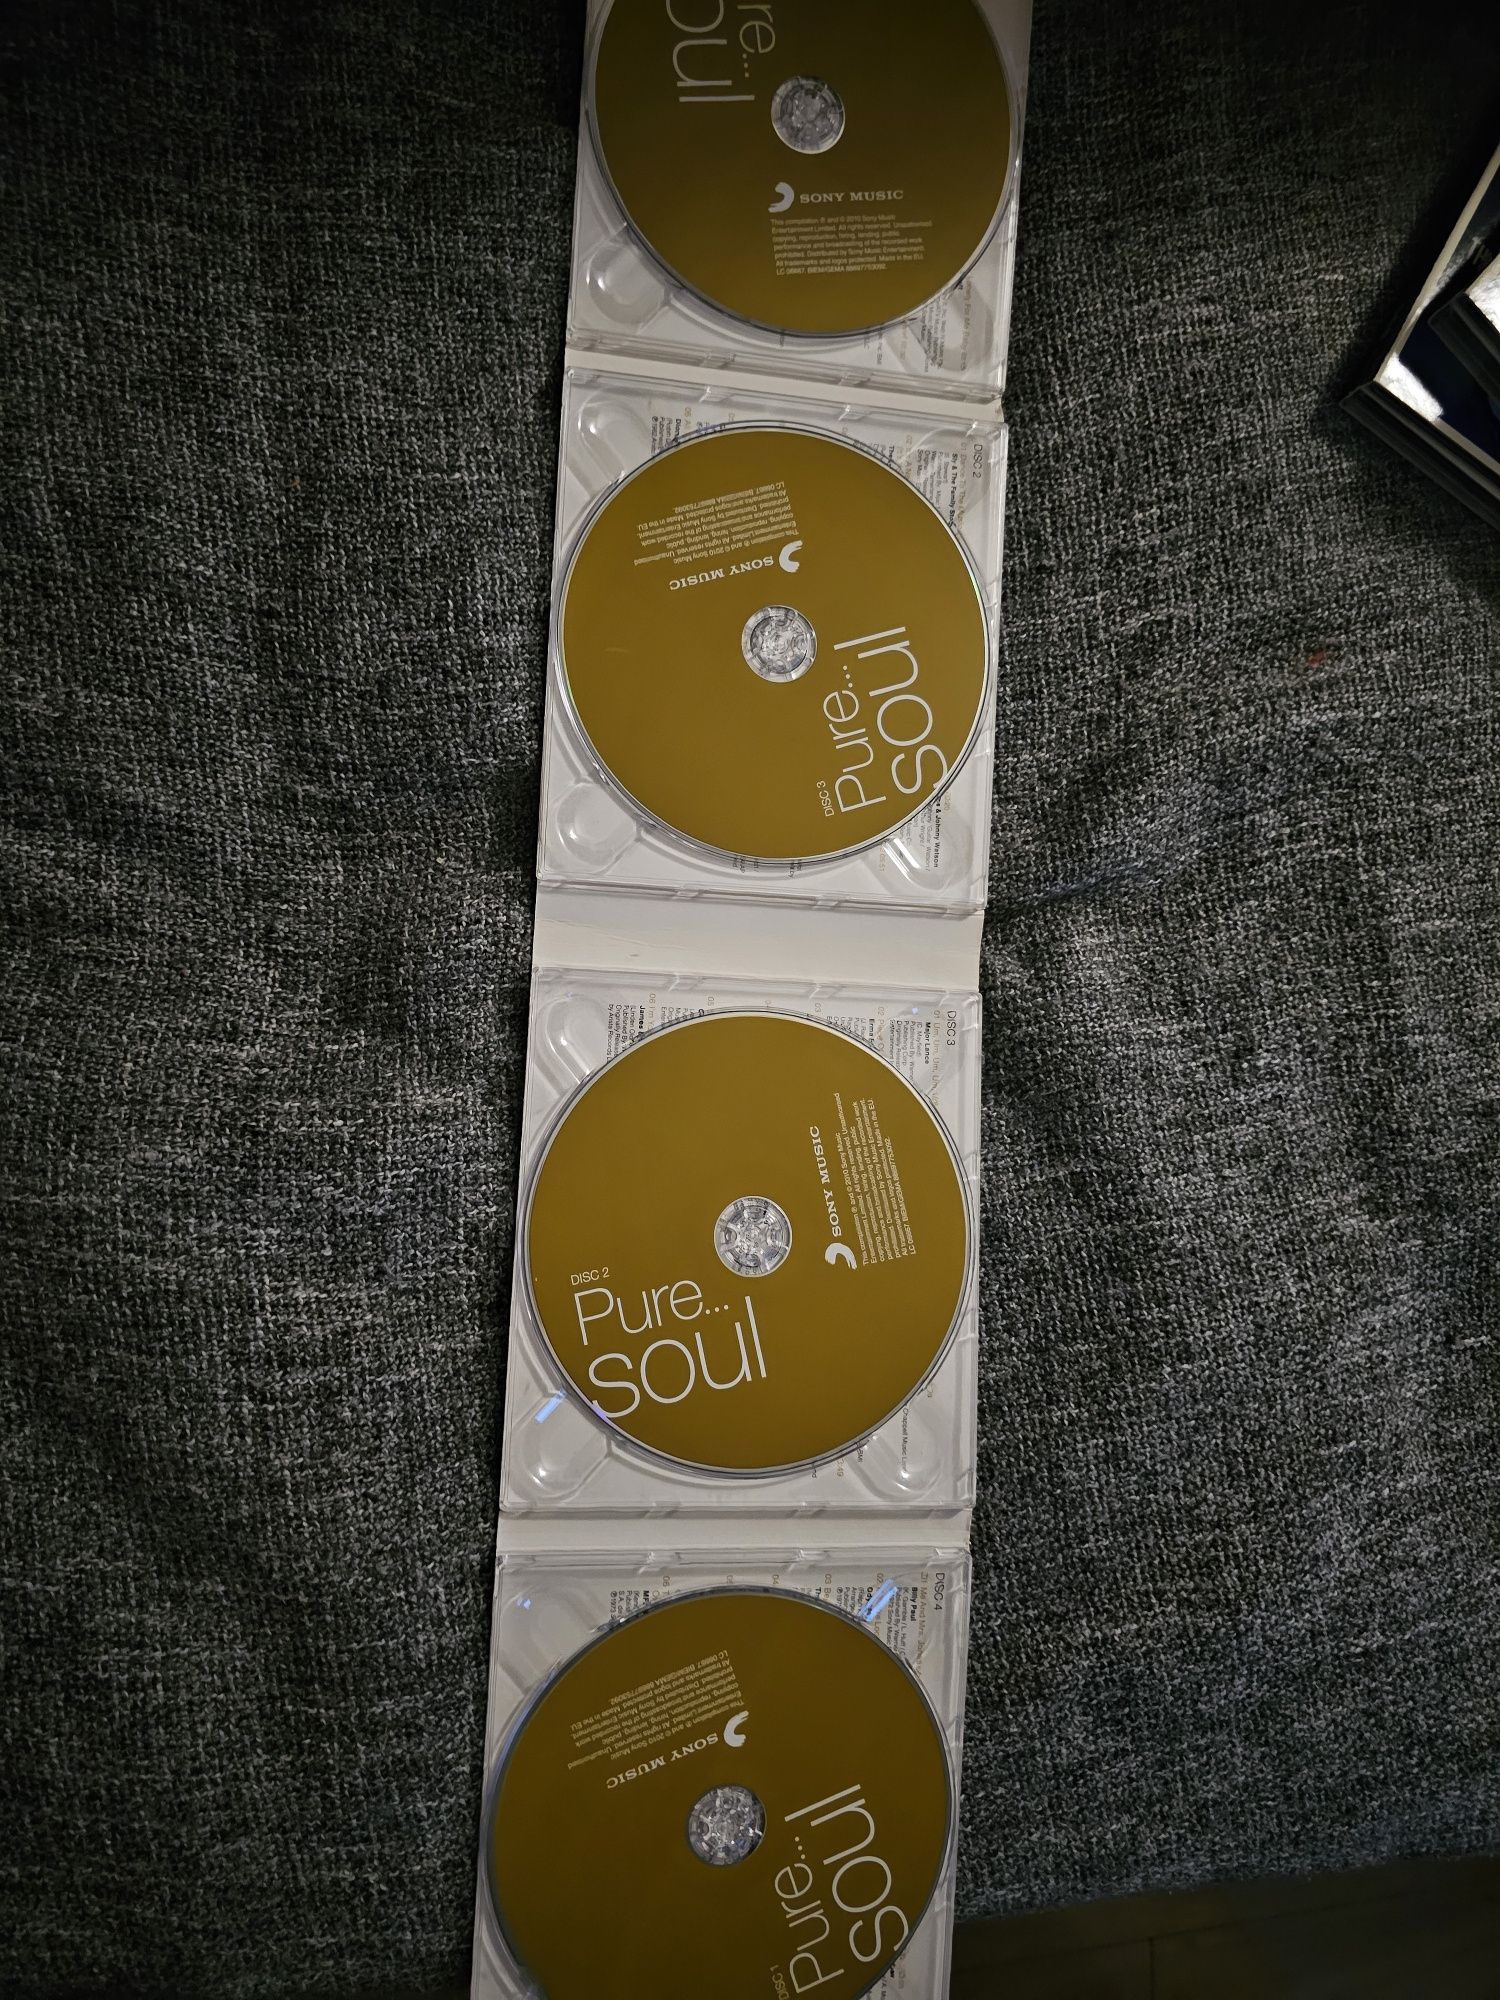 Pure... Soul 4 CD